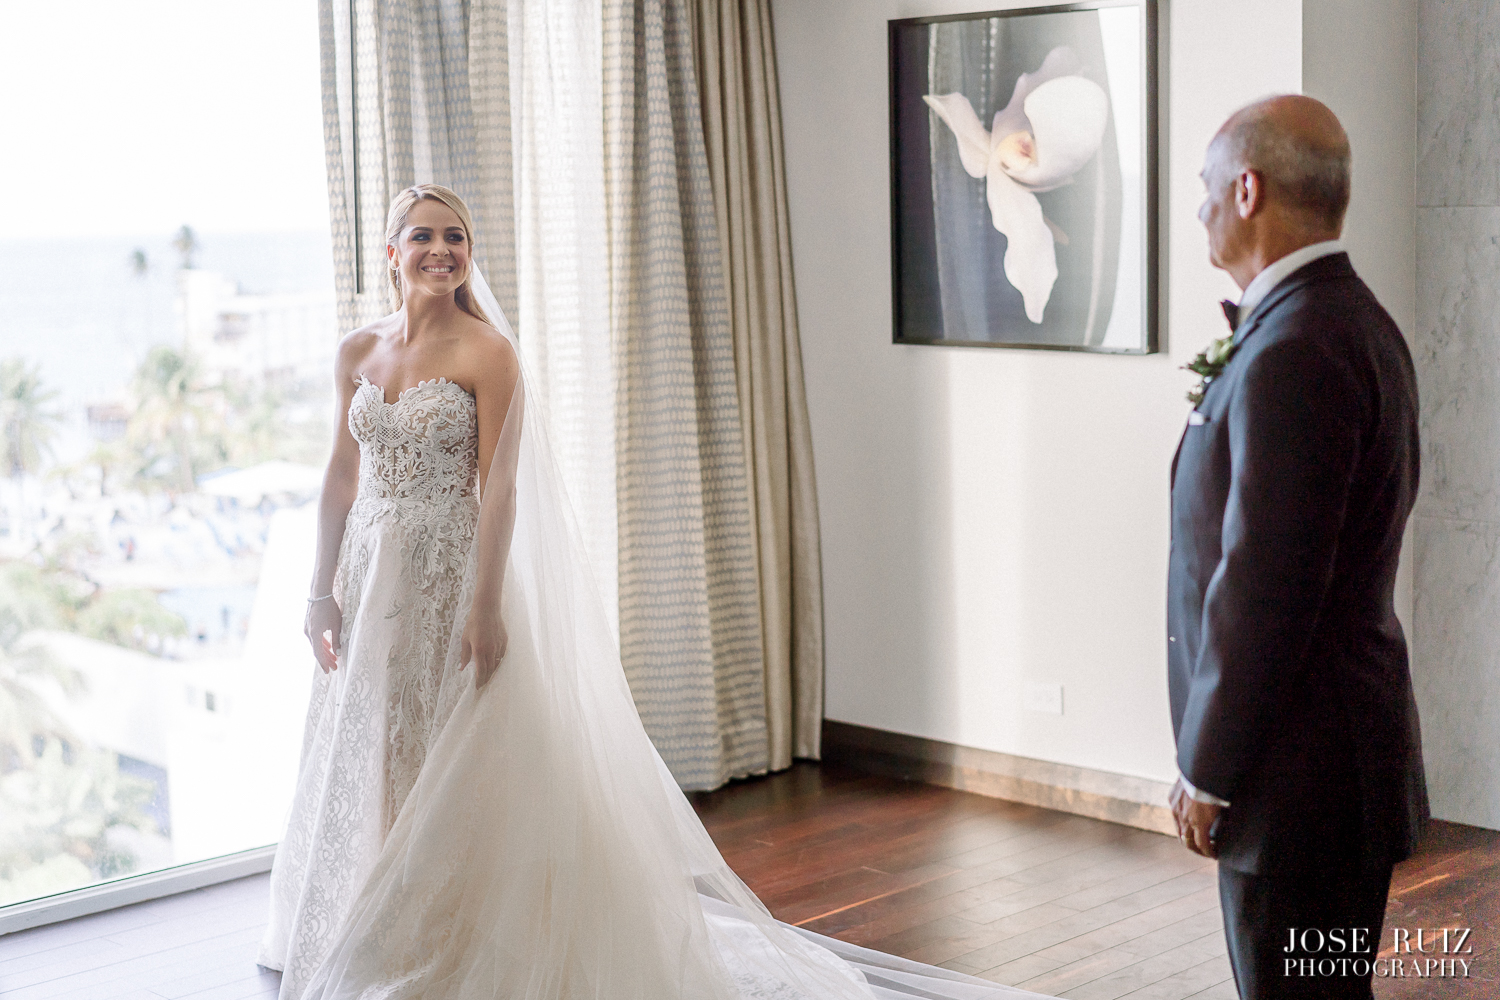 Jose Ruiz Photography- Carolina & Gabo Wedding Day-0070.jpg